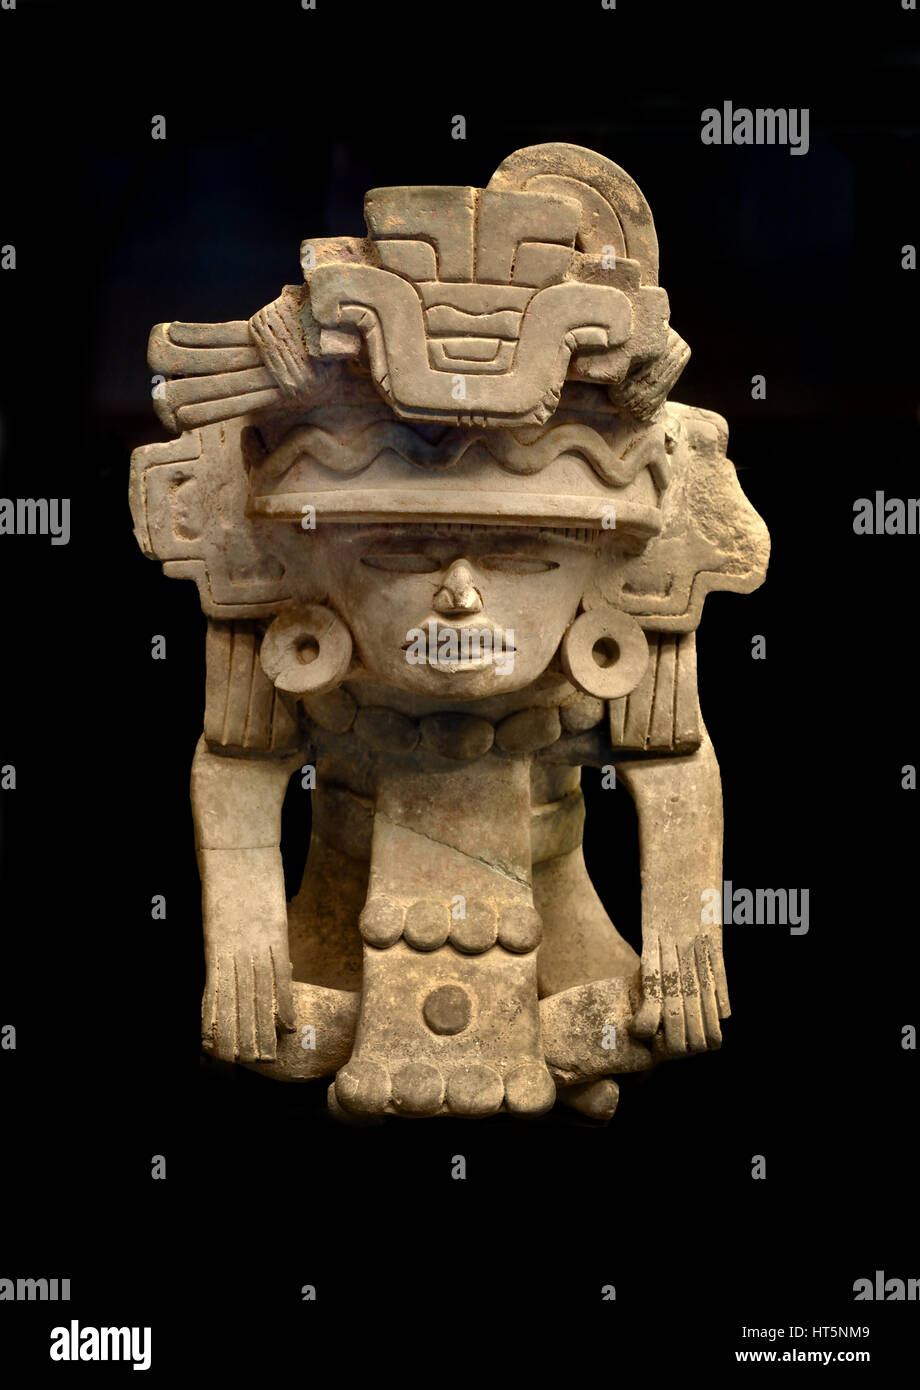 Figurine Clay Jar 1102 1181 Mexico 23 4 X 17 2 X 15 4 Cm Zapotecs